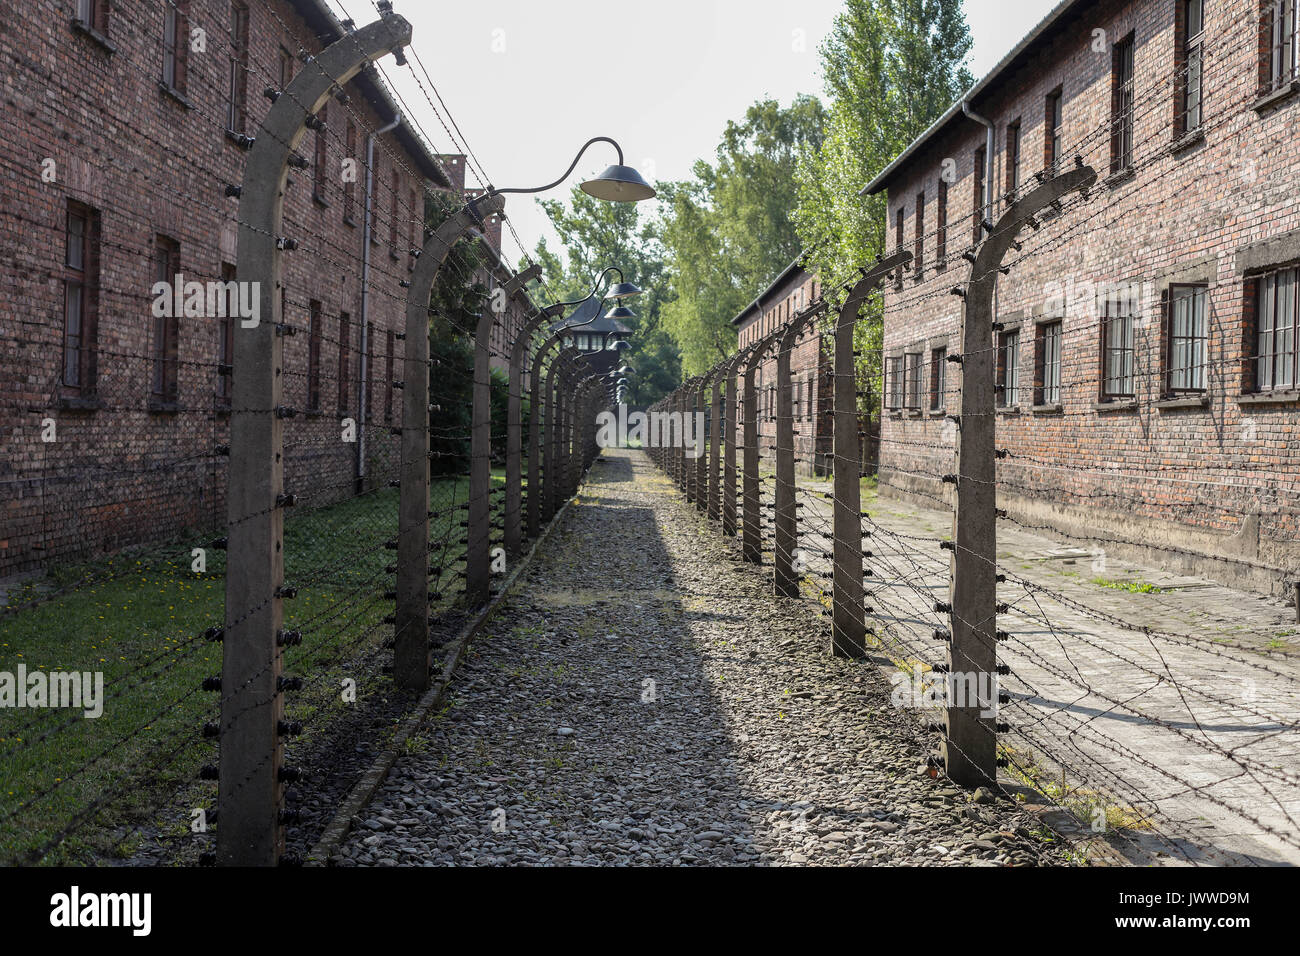 Il filo spinato era stato un recinto elettrico nell'ex campo di concentramento di Auschwitz in Oświęcim, Polonia, 21 giugno 2017. La grande organizzazione paramilitare nella Germania nazista, SS (Schutzstaffel, lit. "Protezione squadrone"), ha eseguito la concentrazione e la morte camp tra 1940 e 1945. Circa 1,1 a 1,5 milioni di persone, la maggior parte di loro ebrei, sono stati uccisi nel campo e i suoi satelliti. Auschwitz si erge come simbolo per i paesi industrializzati e omicidi di massa e l Olocausto nazista in Germania. Foto: Jan Woitas/dpa-Zentralbild/dpa | Utilizzo di tutto il mondo Foto Stock